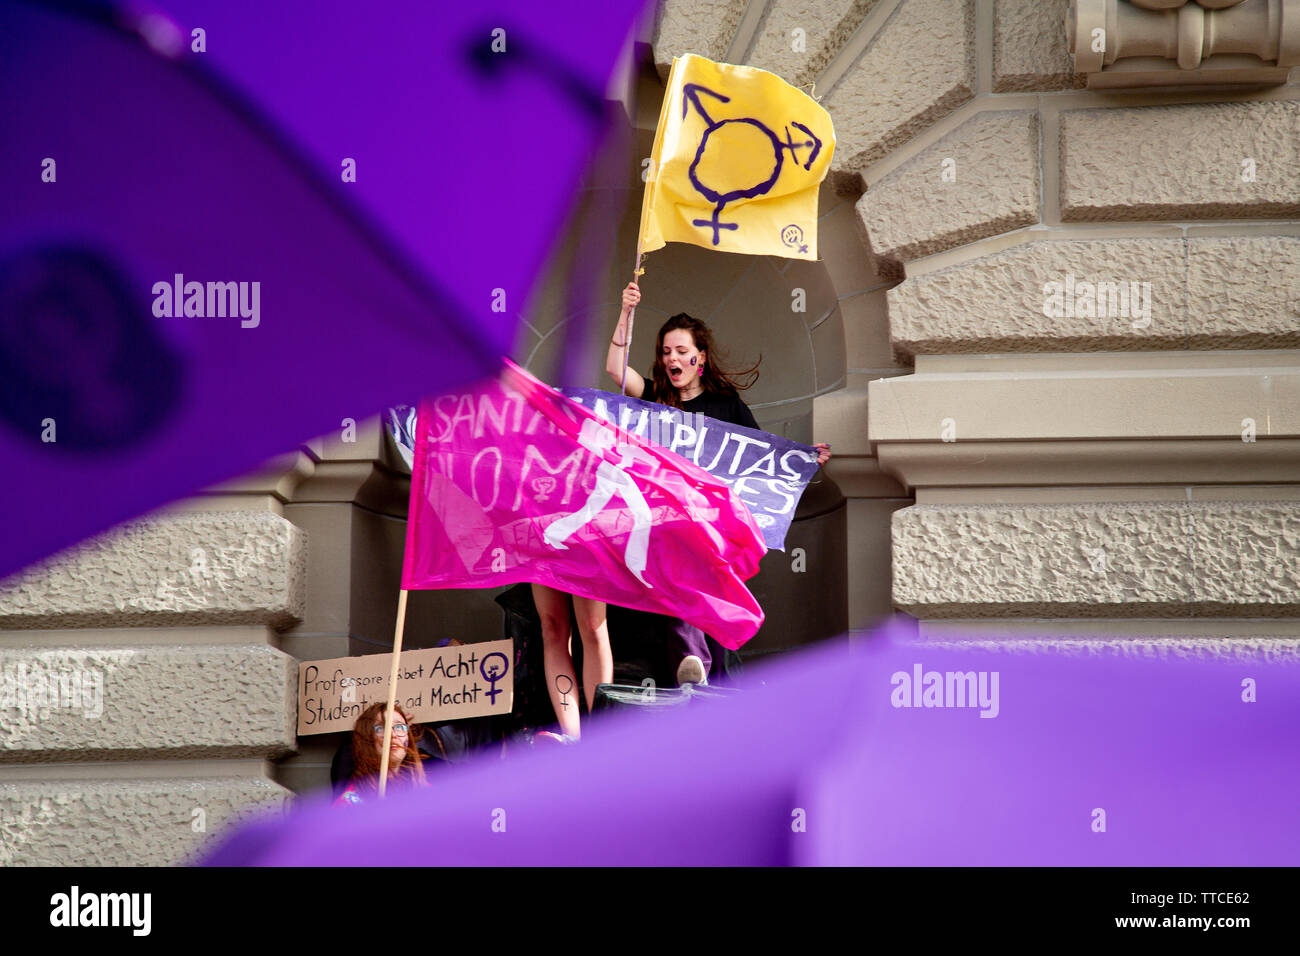 Il Frauenstreik - Womens sciopero - ha portato un numero record di donne per le strade in tutte le grandi città in Svizzera. In Campidoglio Berna, più di 40.000 hanno marciato in tutta la città alla lotta per la parità tra i sessi. Foto Stock